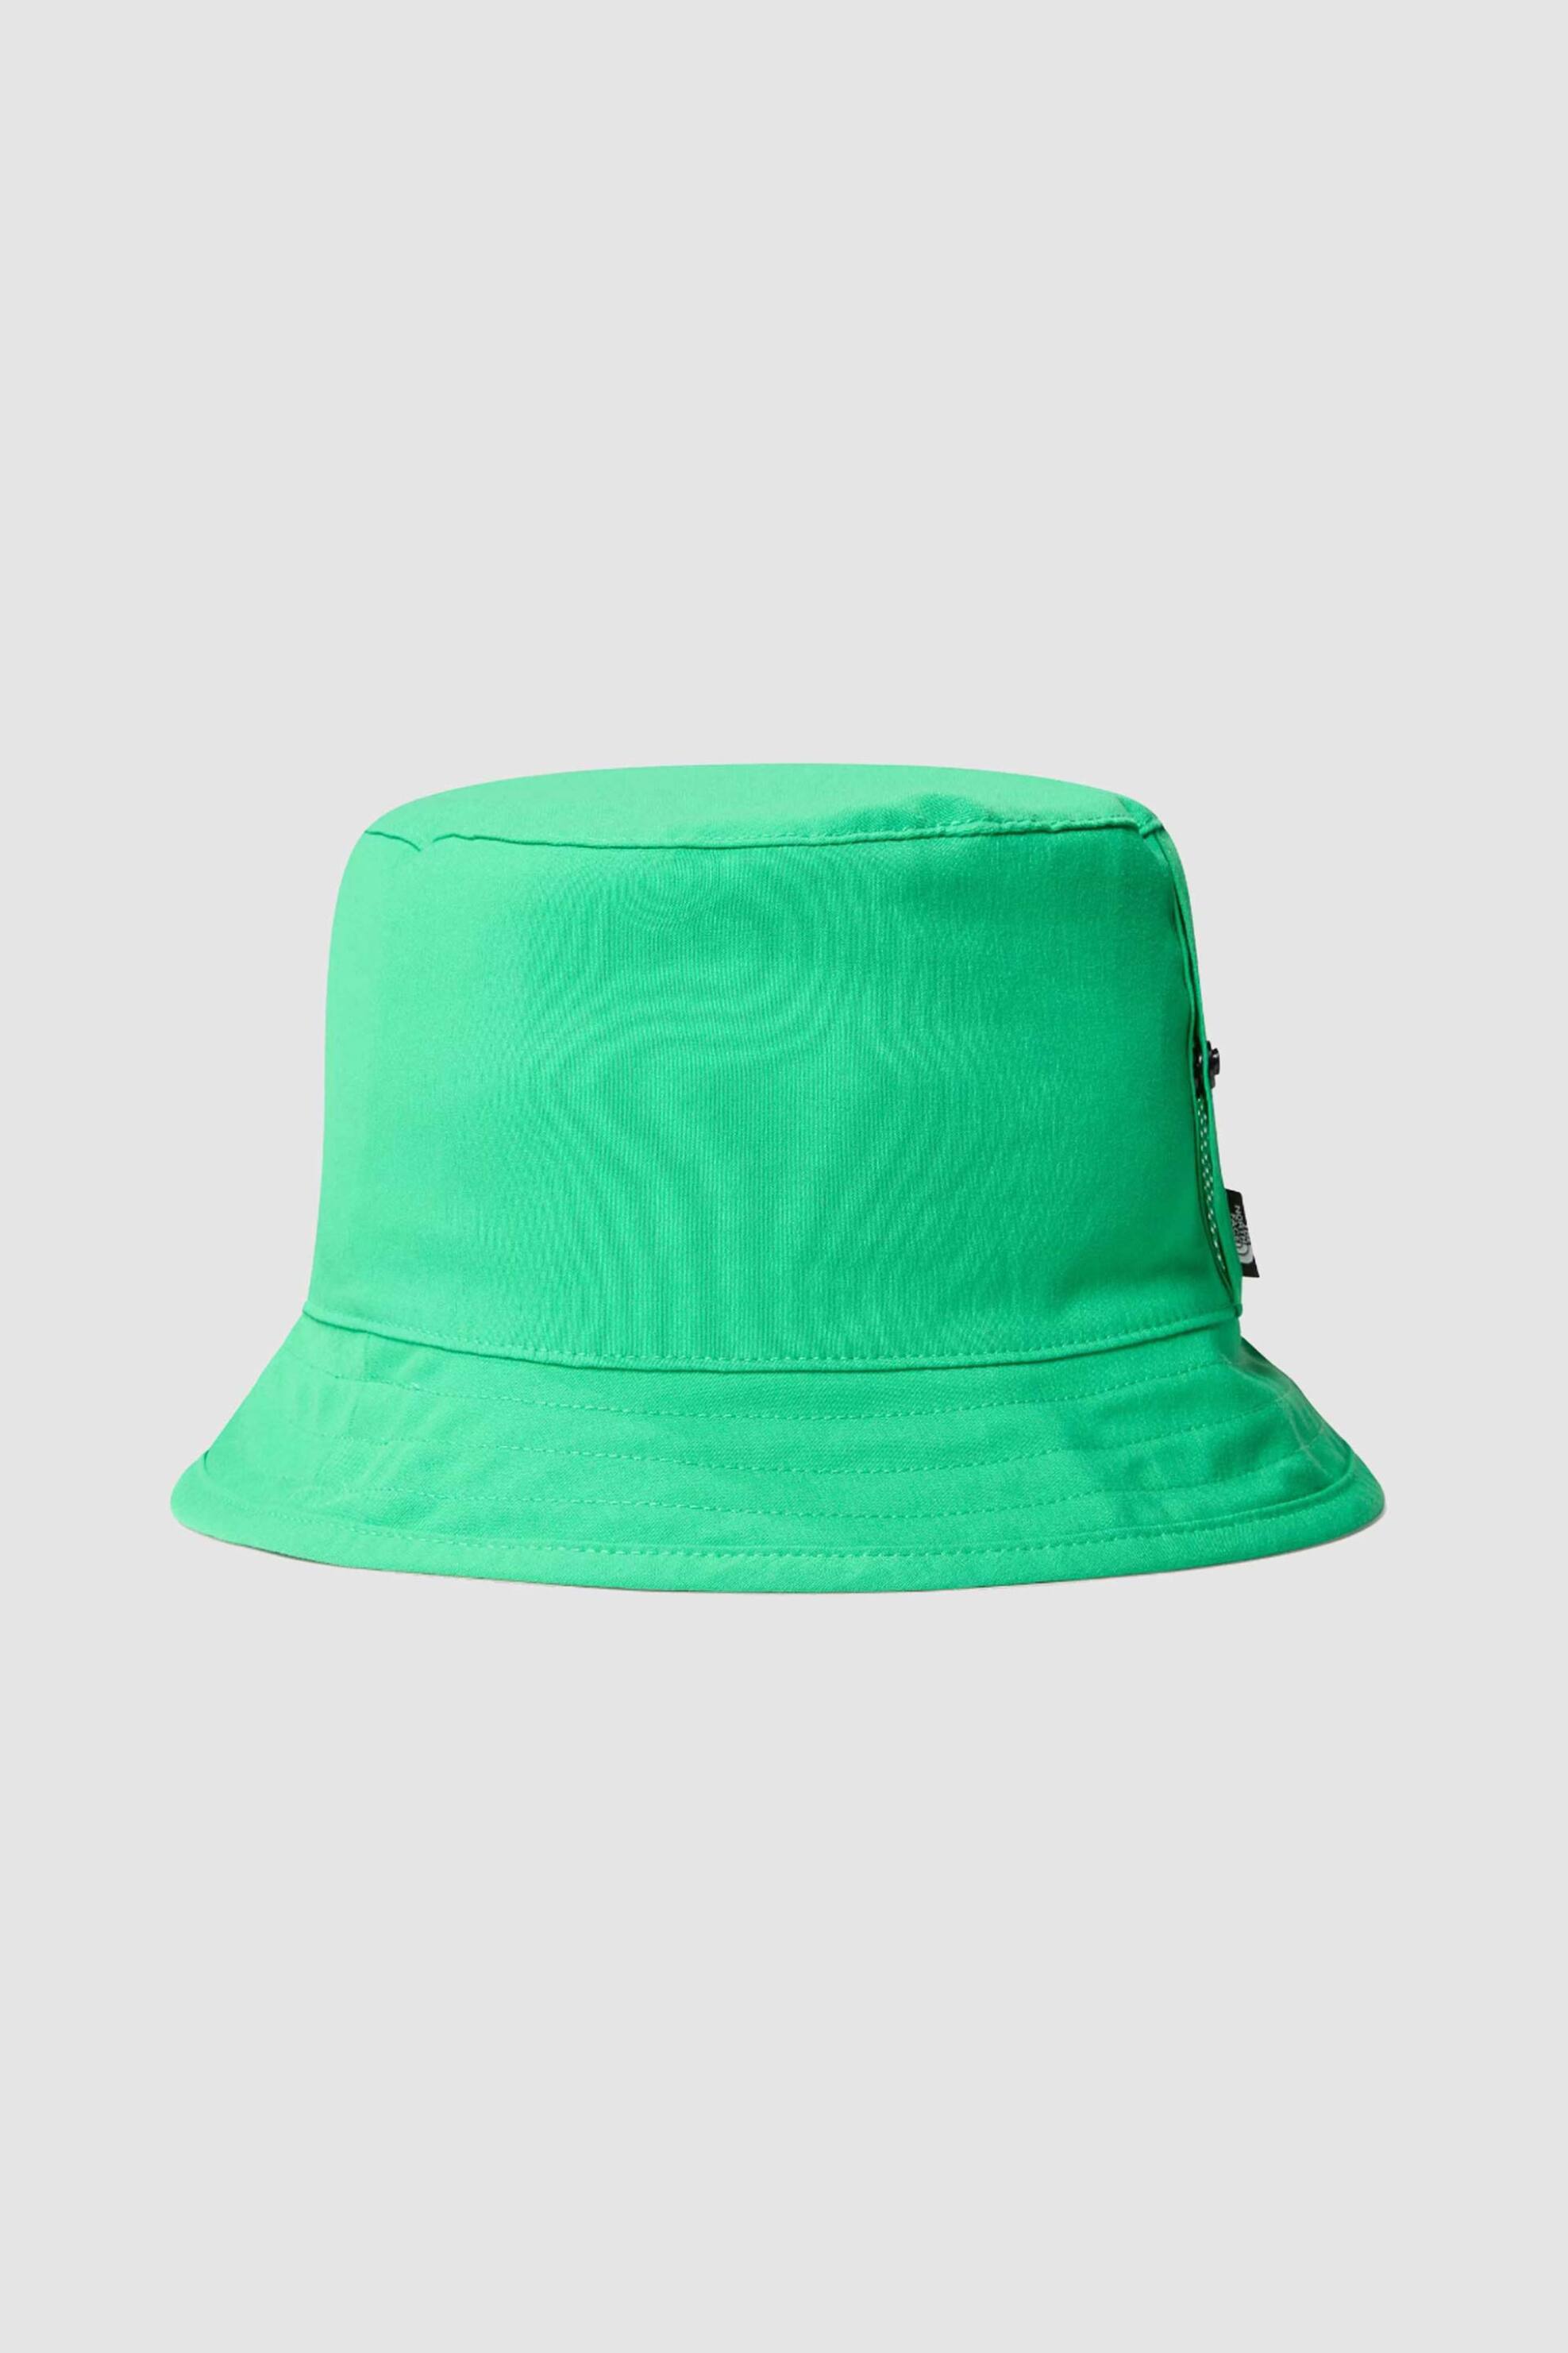 Ανδρική Μόδα > Ανδρικά Αξεσουάρ > Ανδρικά Καπέλα & Σκούφοι The North Face unisex καπέλο bucket διπλής όψης με logo label στο πλάι "Class V" - NF0A7WGY4GI1 Πράσινο Tropical